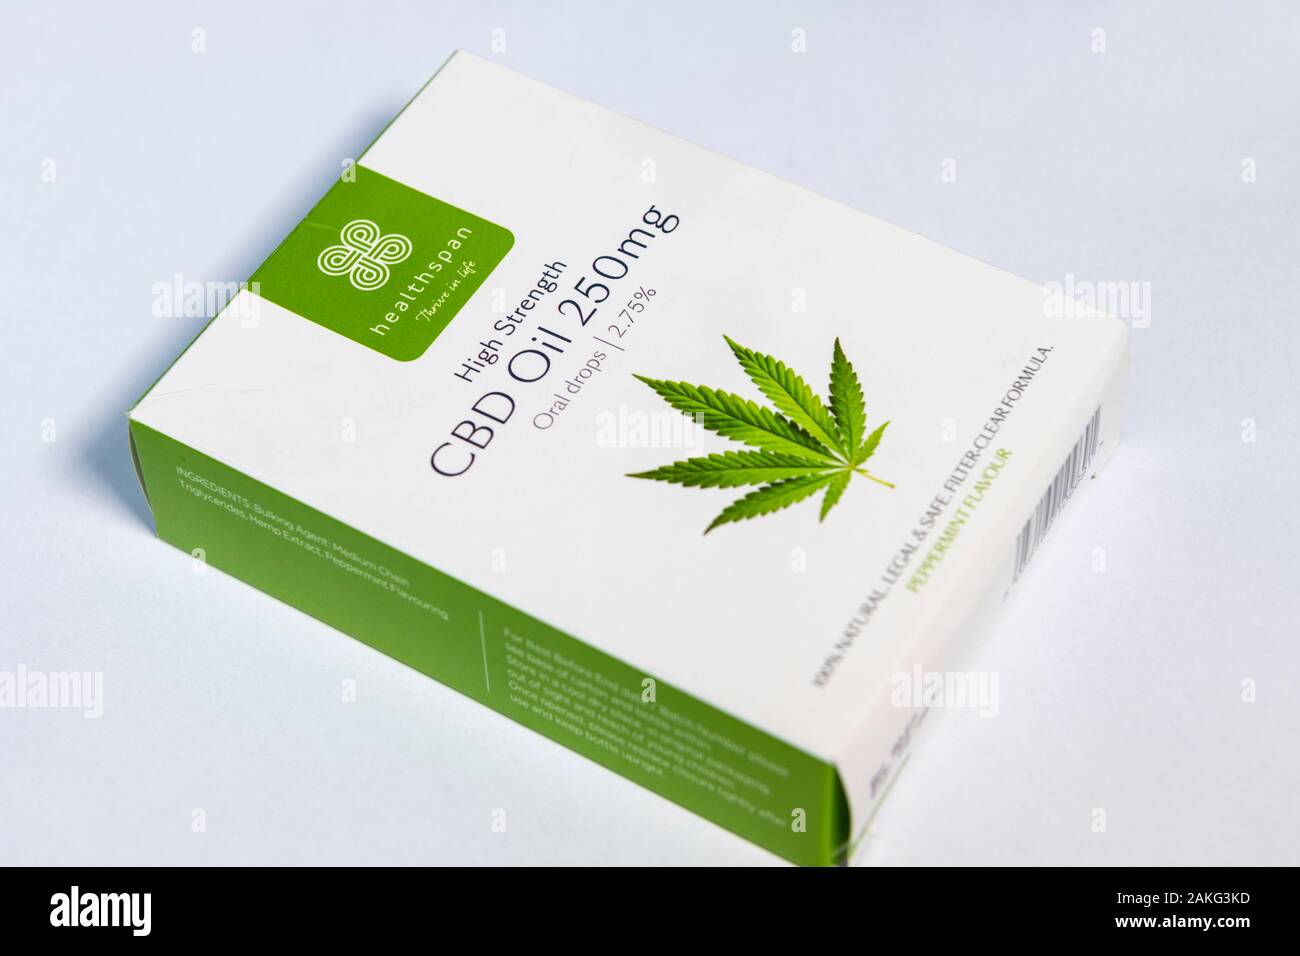 Una scatola di marca Healthspan olio CBD, legale olio di cannabis usata come un supplemento di salute Foto Stock